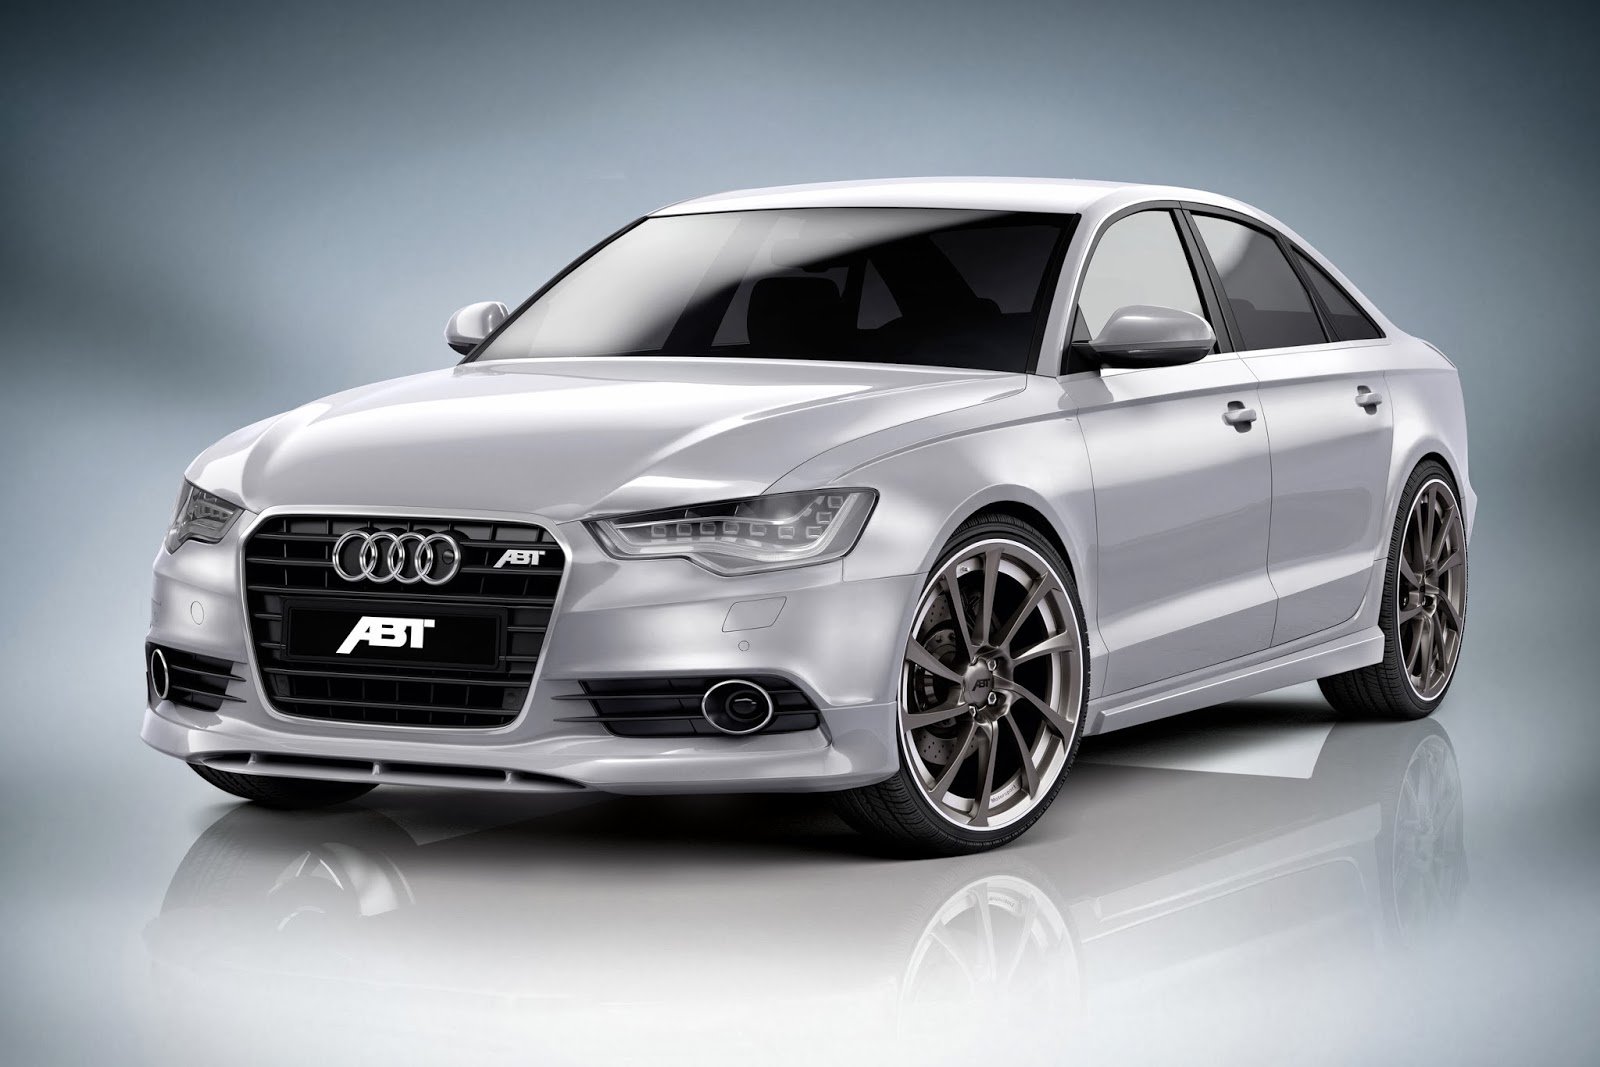 © Automotiveblogz: 2014 Audi A6: ABT Sportsline AS6 Photos